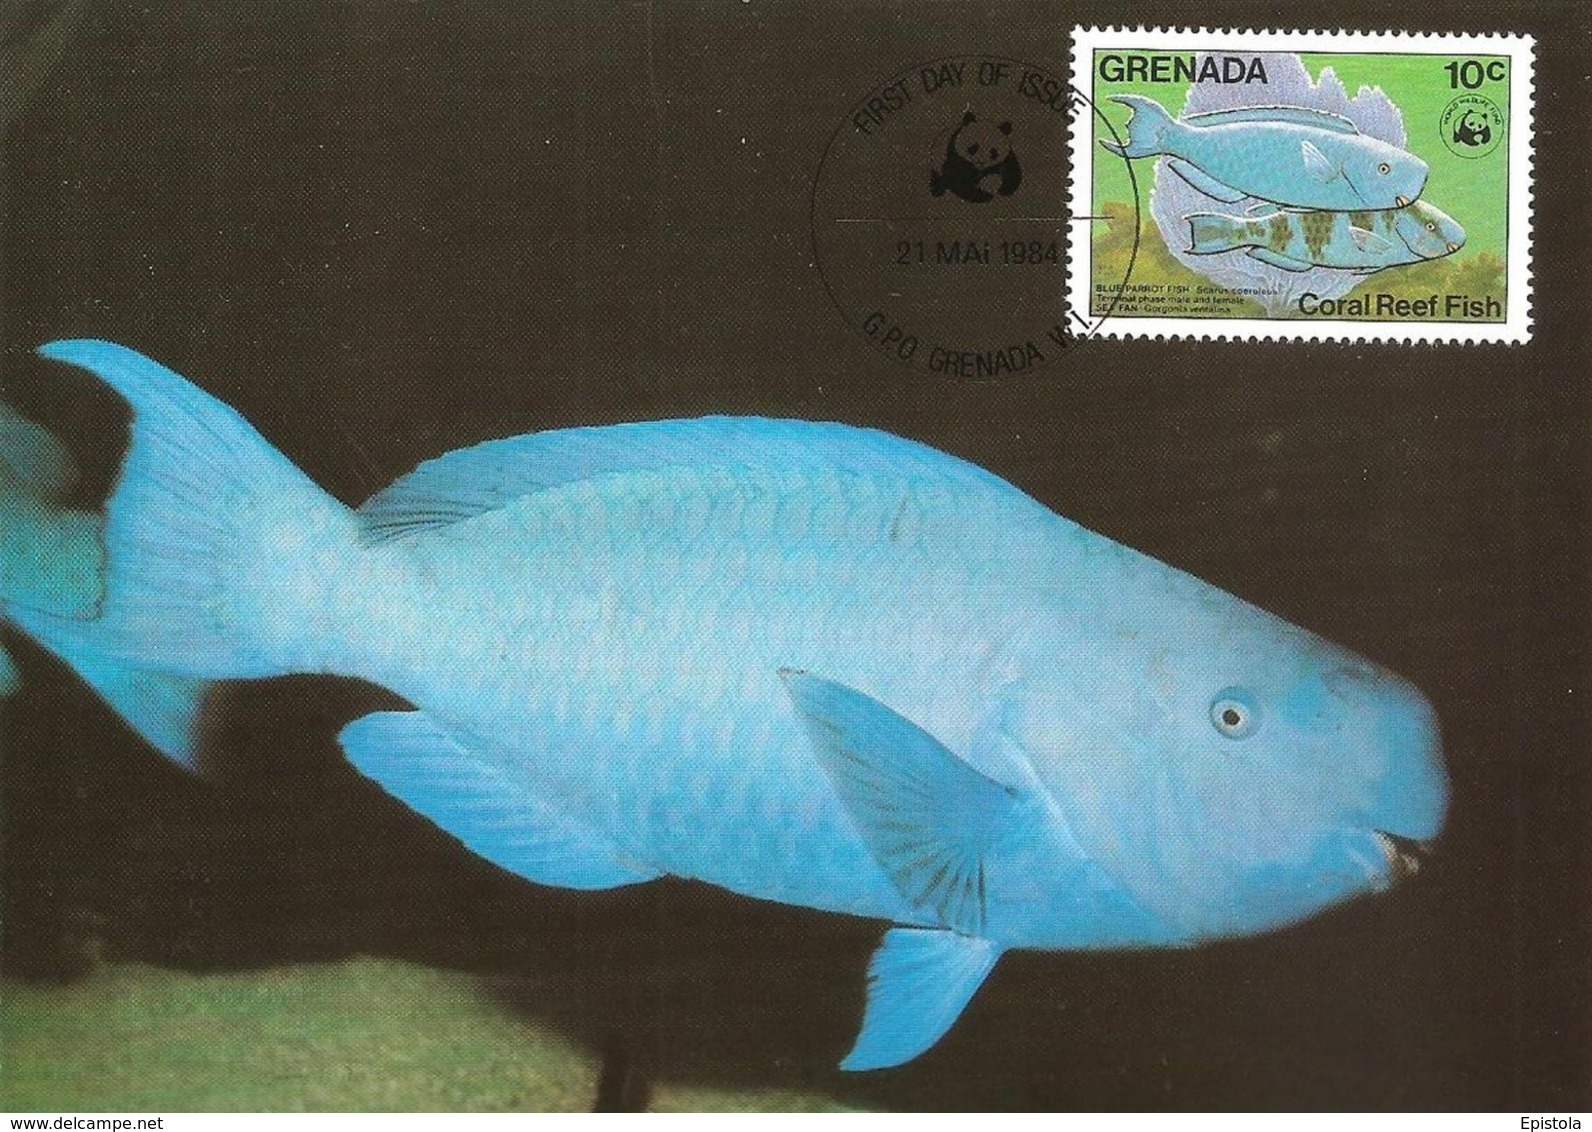 1984 - GRENADA - Ile Grenade - Blauer Papageifisch, Scarus Coeruleus, Blue Parrotfish WWF - Grenada